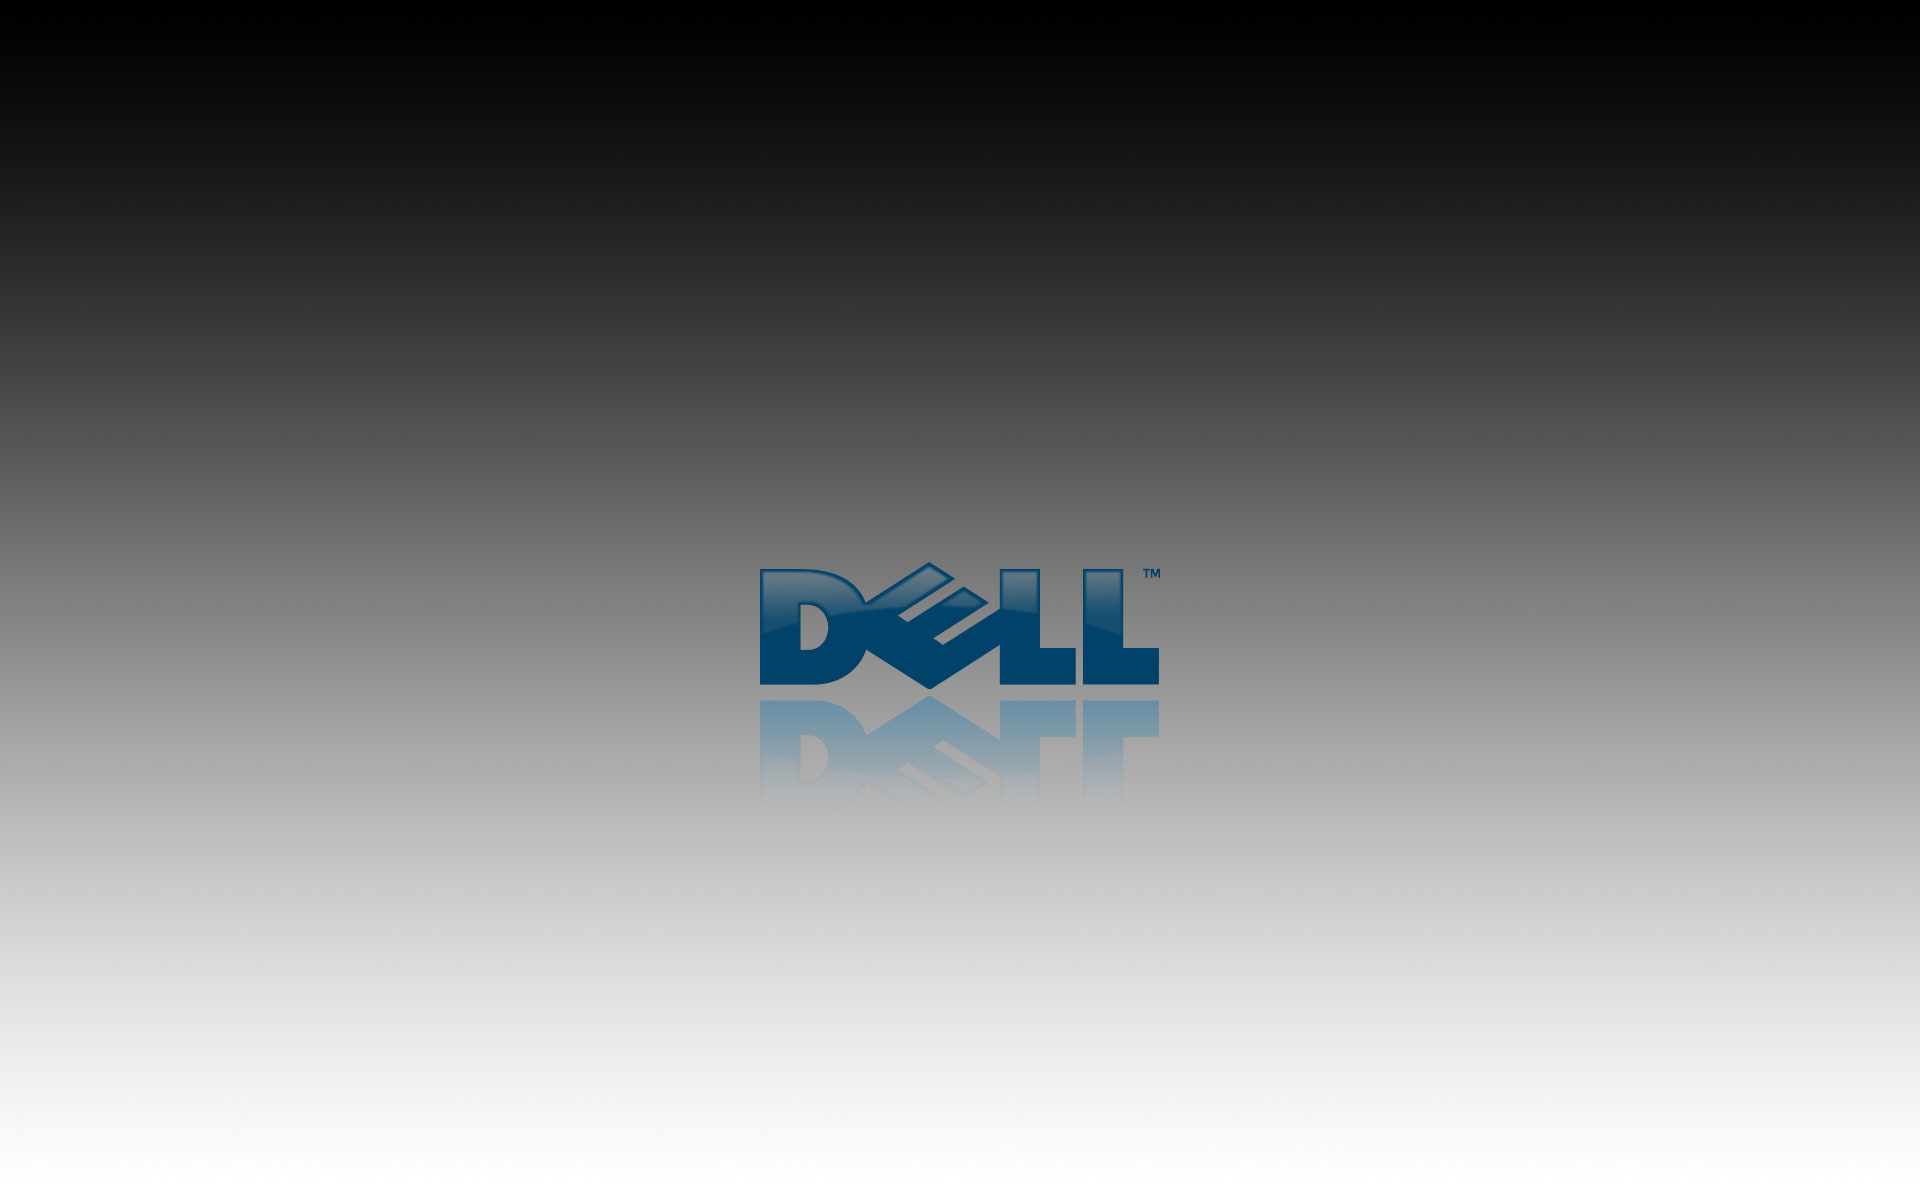 Dell Wallpaper by HMSDexter on DeviantArt